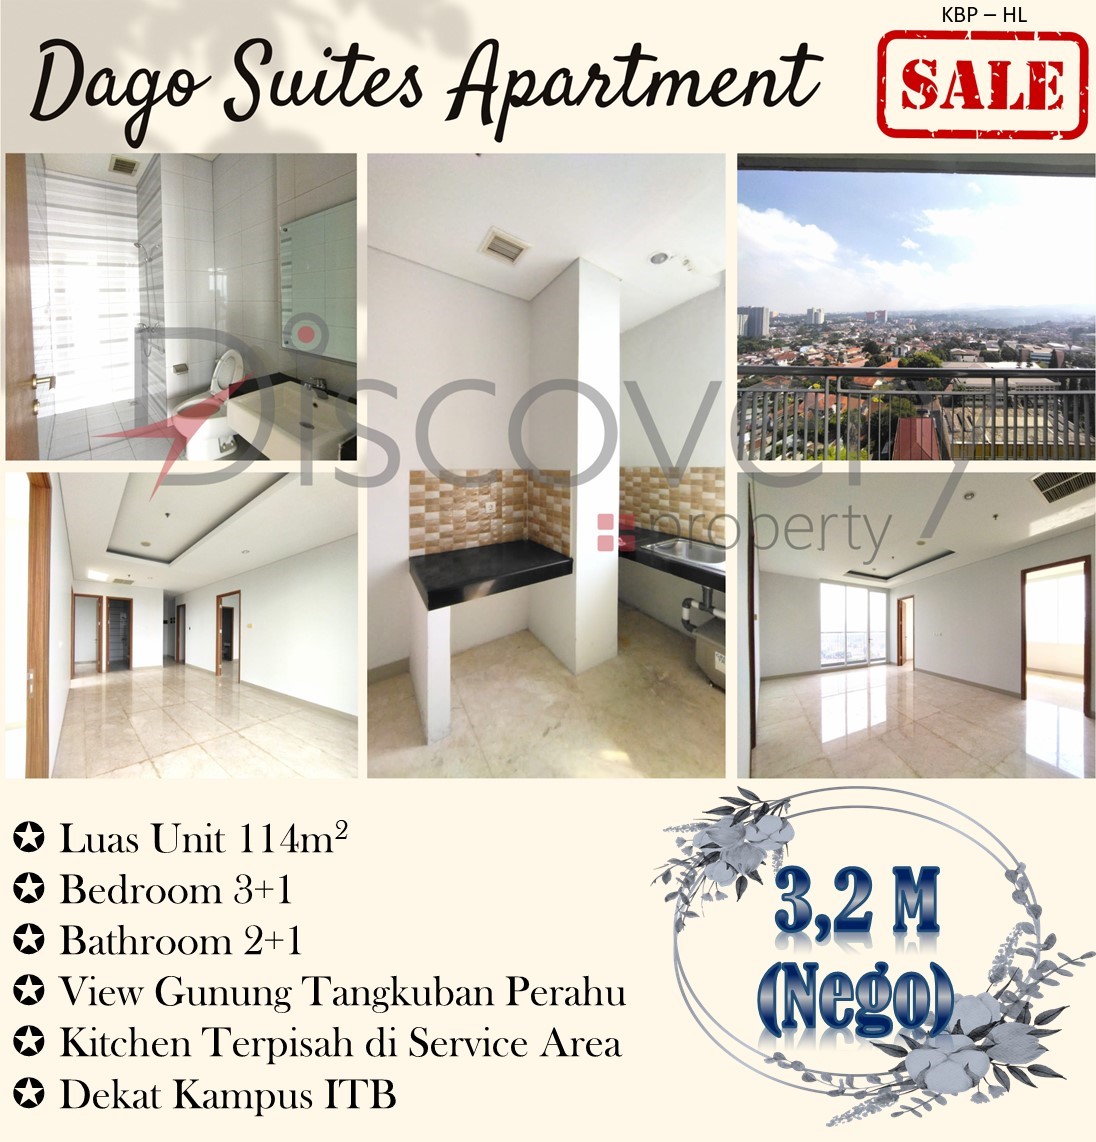 For Sale! ! Dago Suites Apartment View Gunung Tangkuban Perahu